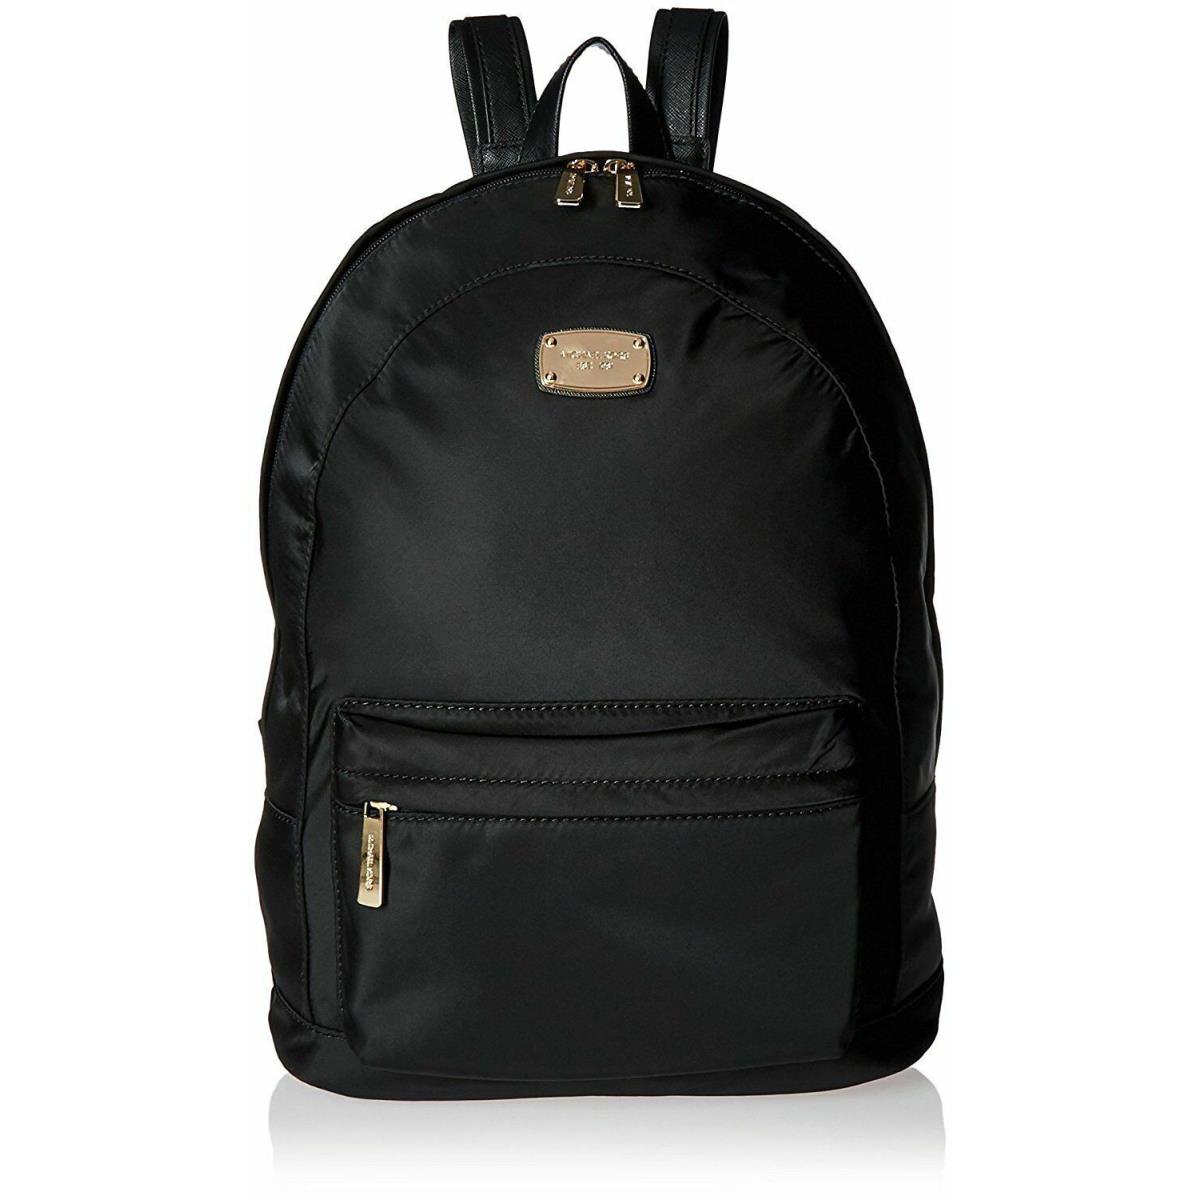 Michael Kors MK Jet Set Item Large Backpack-black/gold